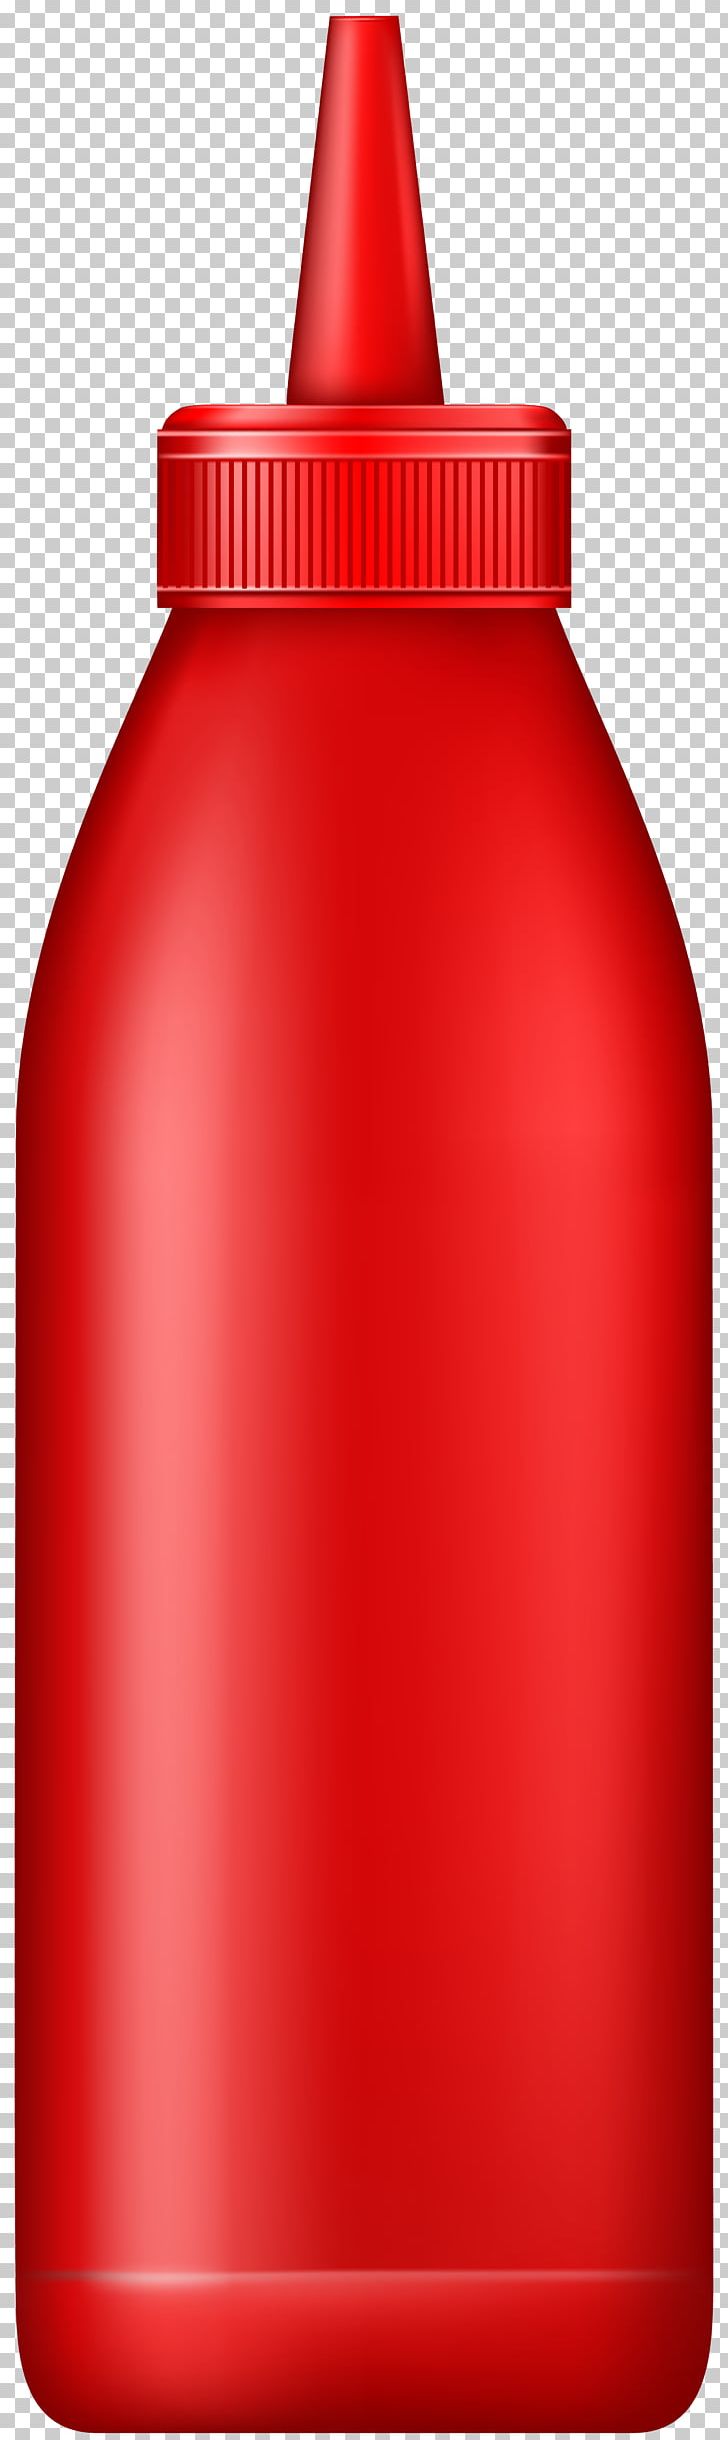 Water Bottles Product Design Ketchup PNG, Clipart, Bottle, Bottle ...